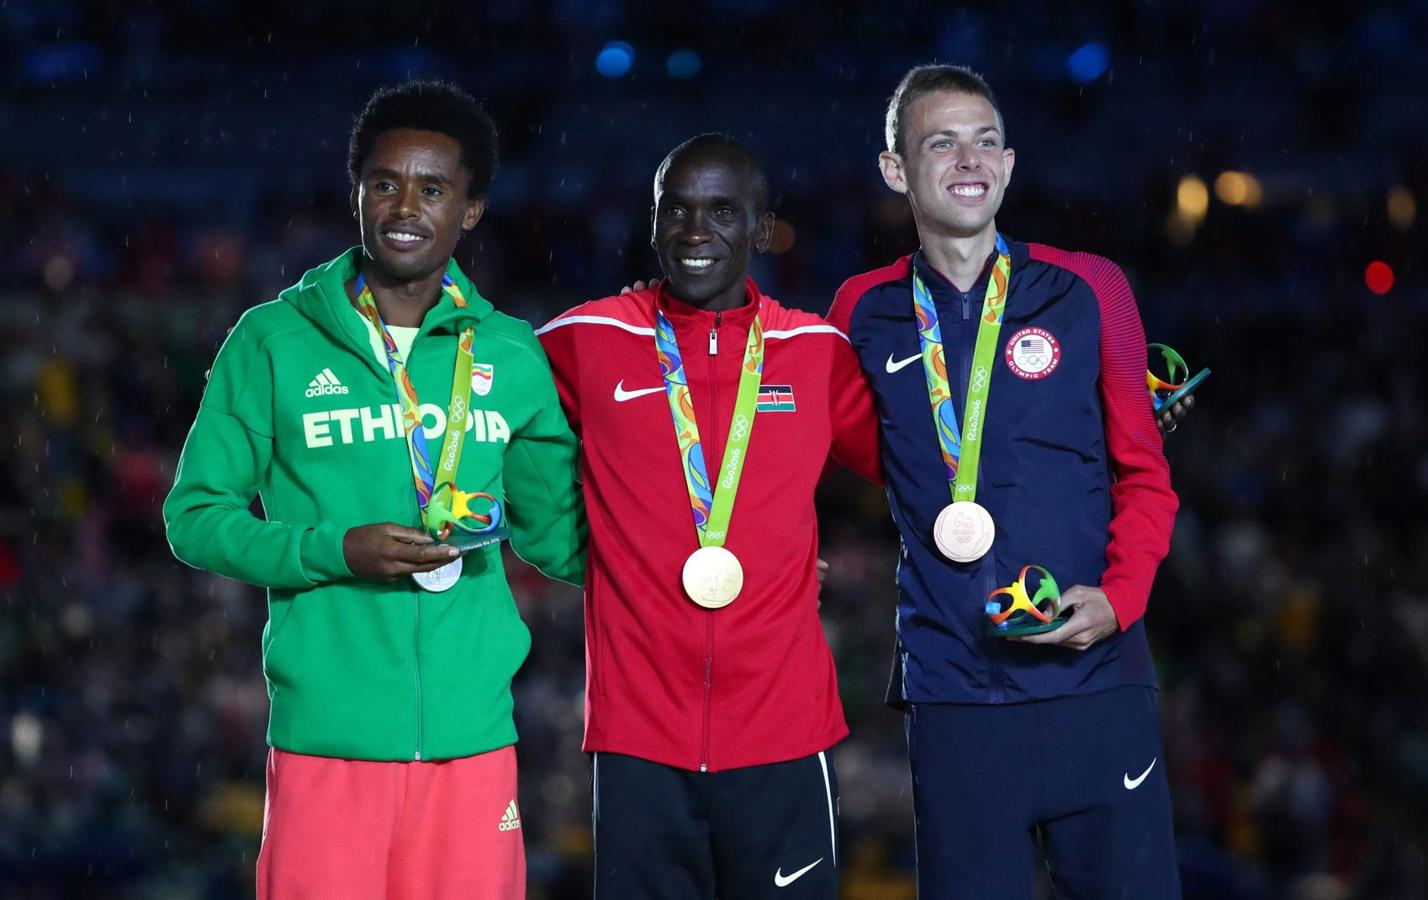 Clausura de los Juegos Olímpicos de Río 2016: medallistas del maratón